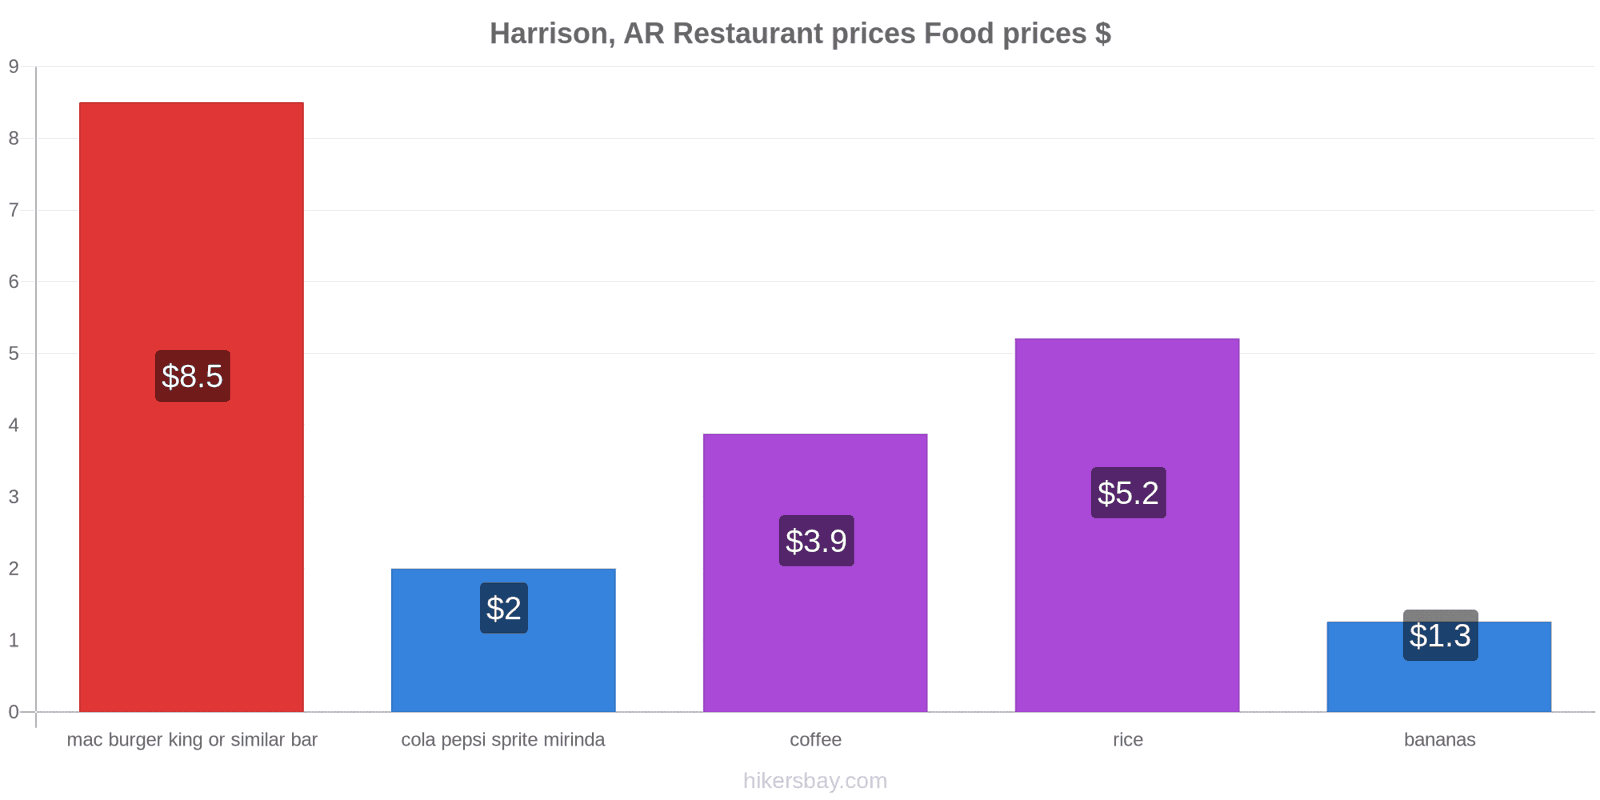 Harrison, AR price changes hikersbay.com